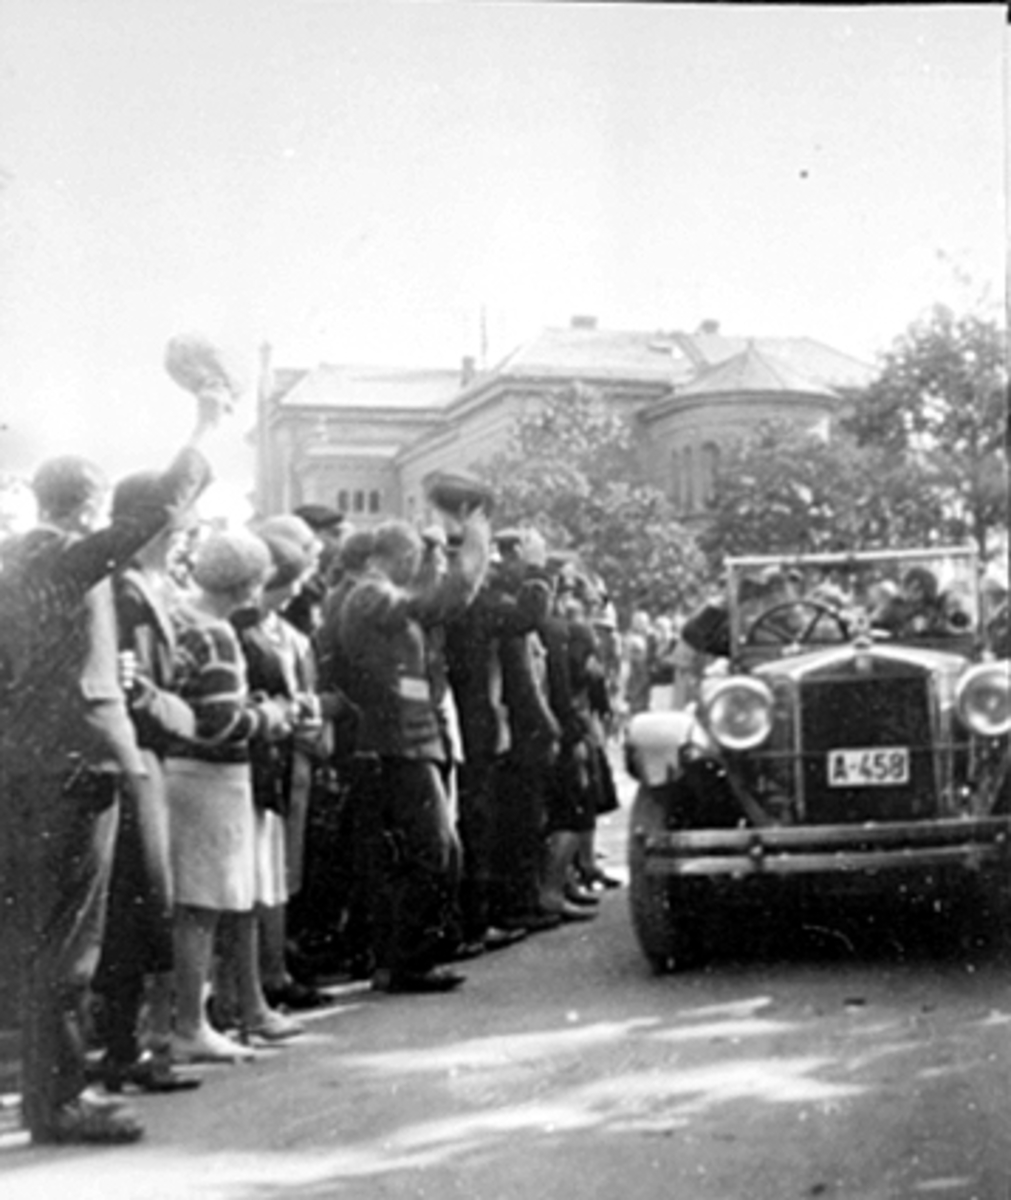 Hamar, kronprins Olav og kronprinsesse Märtha besøker Hjemmets Vel utstilling, ankommer i kronprinsens åpne bil med registreringsnummer A-458